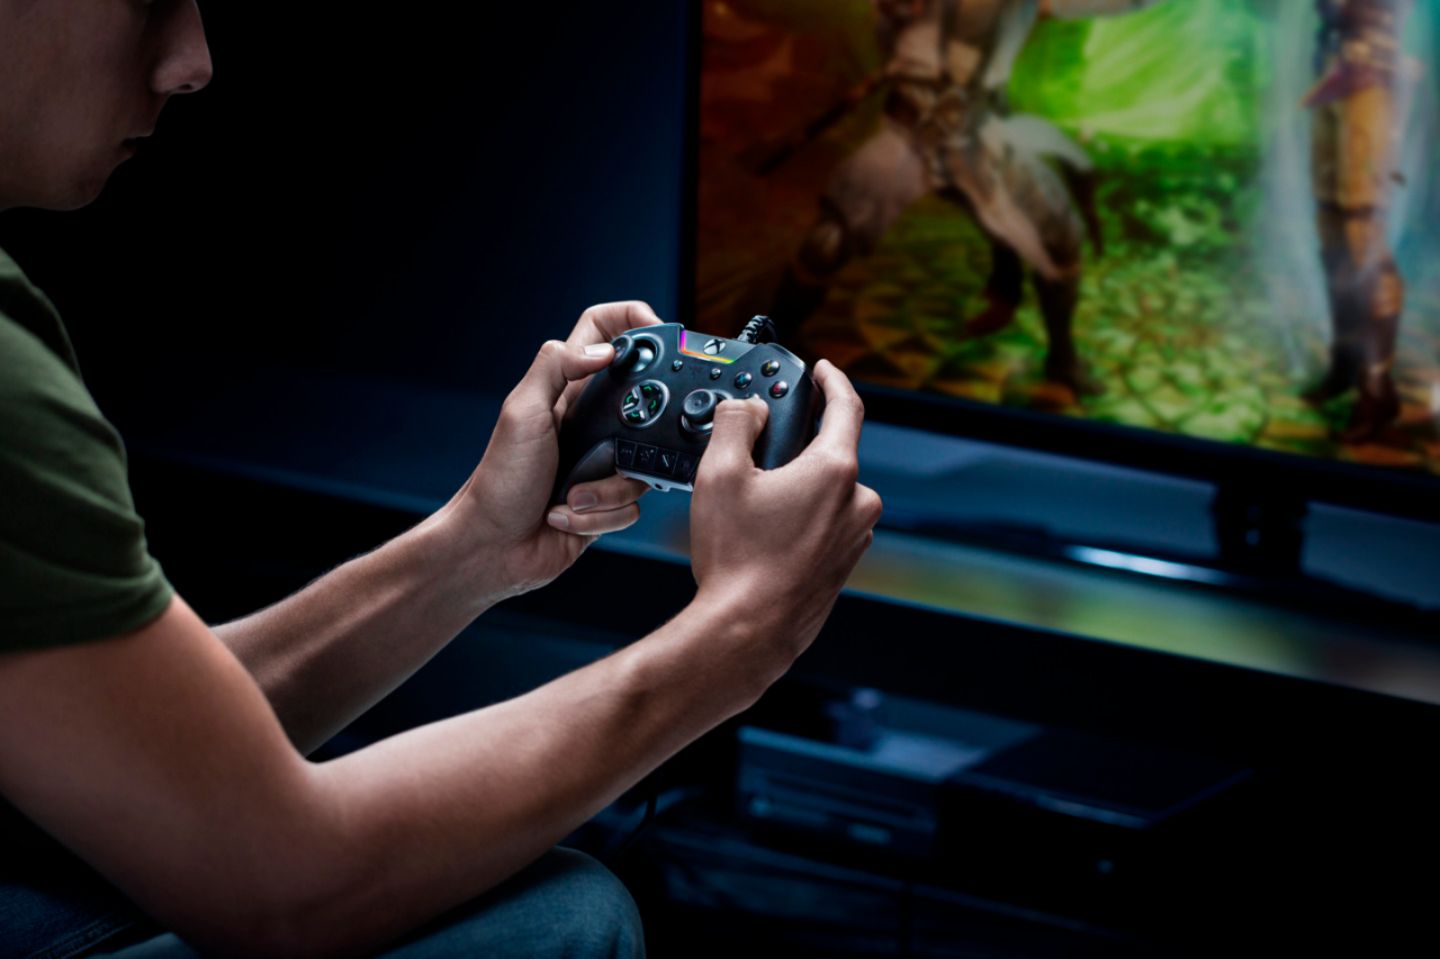 Player Games - Player Games - Aluguel de Jogos de PS4 e Xbox One  Funcionamos todos os dias das 10hrs às 22hrs. 🎮 1 jogo por 3 dias: R$ 8  reais; 🎮